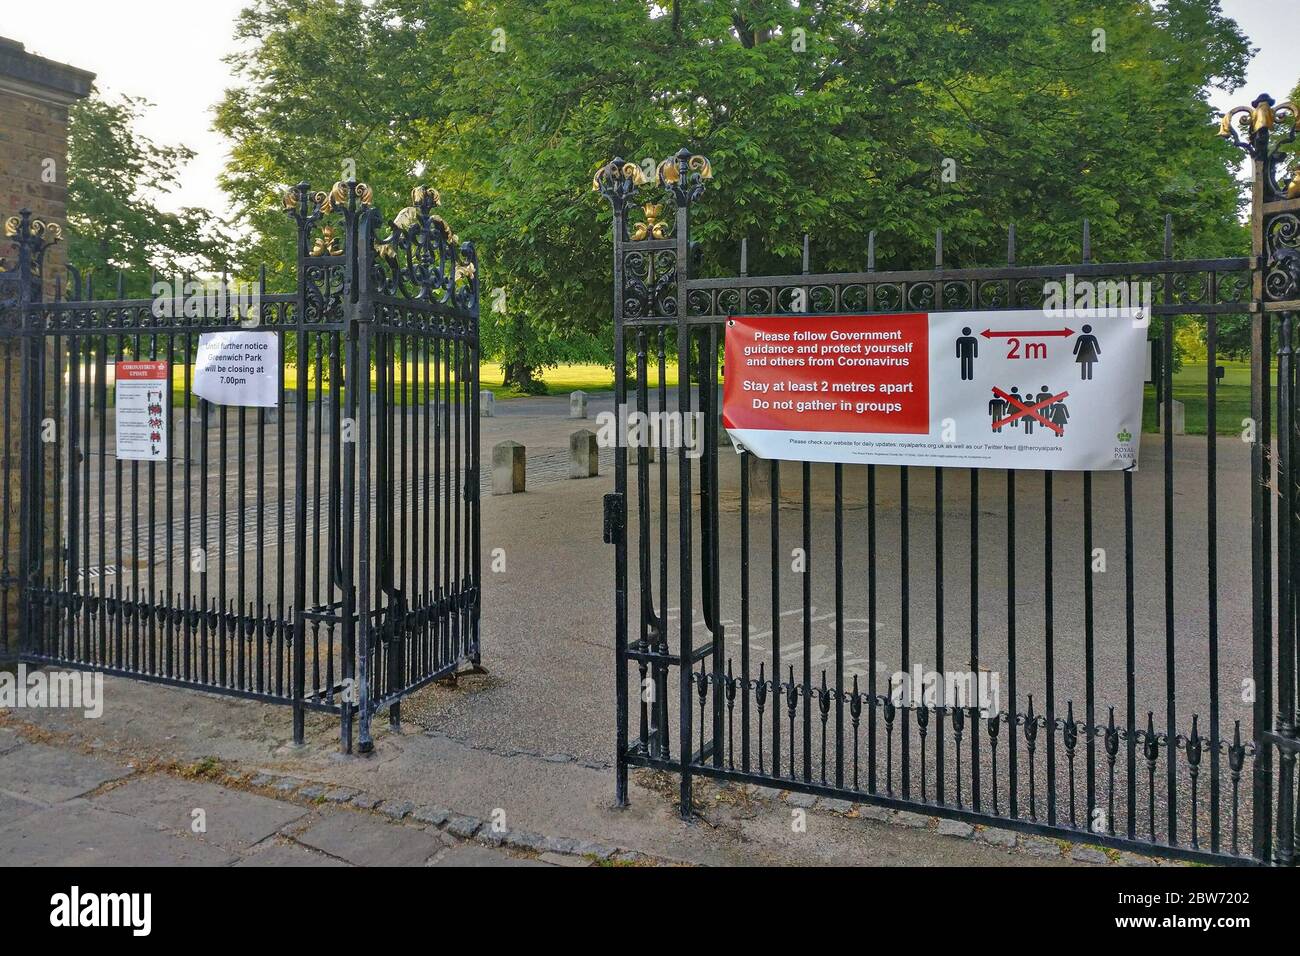 Londres, Royaume-Uni - 08 mai 2020 : panneau de sécurité pour les conseils de prévention des virus sur la clôture du parc de Greenwich en raison du coronavirus Covid 19. De nombreux lieux publics Banque D'Images